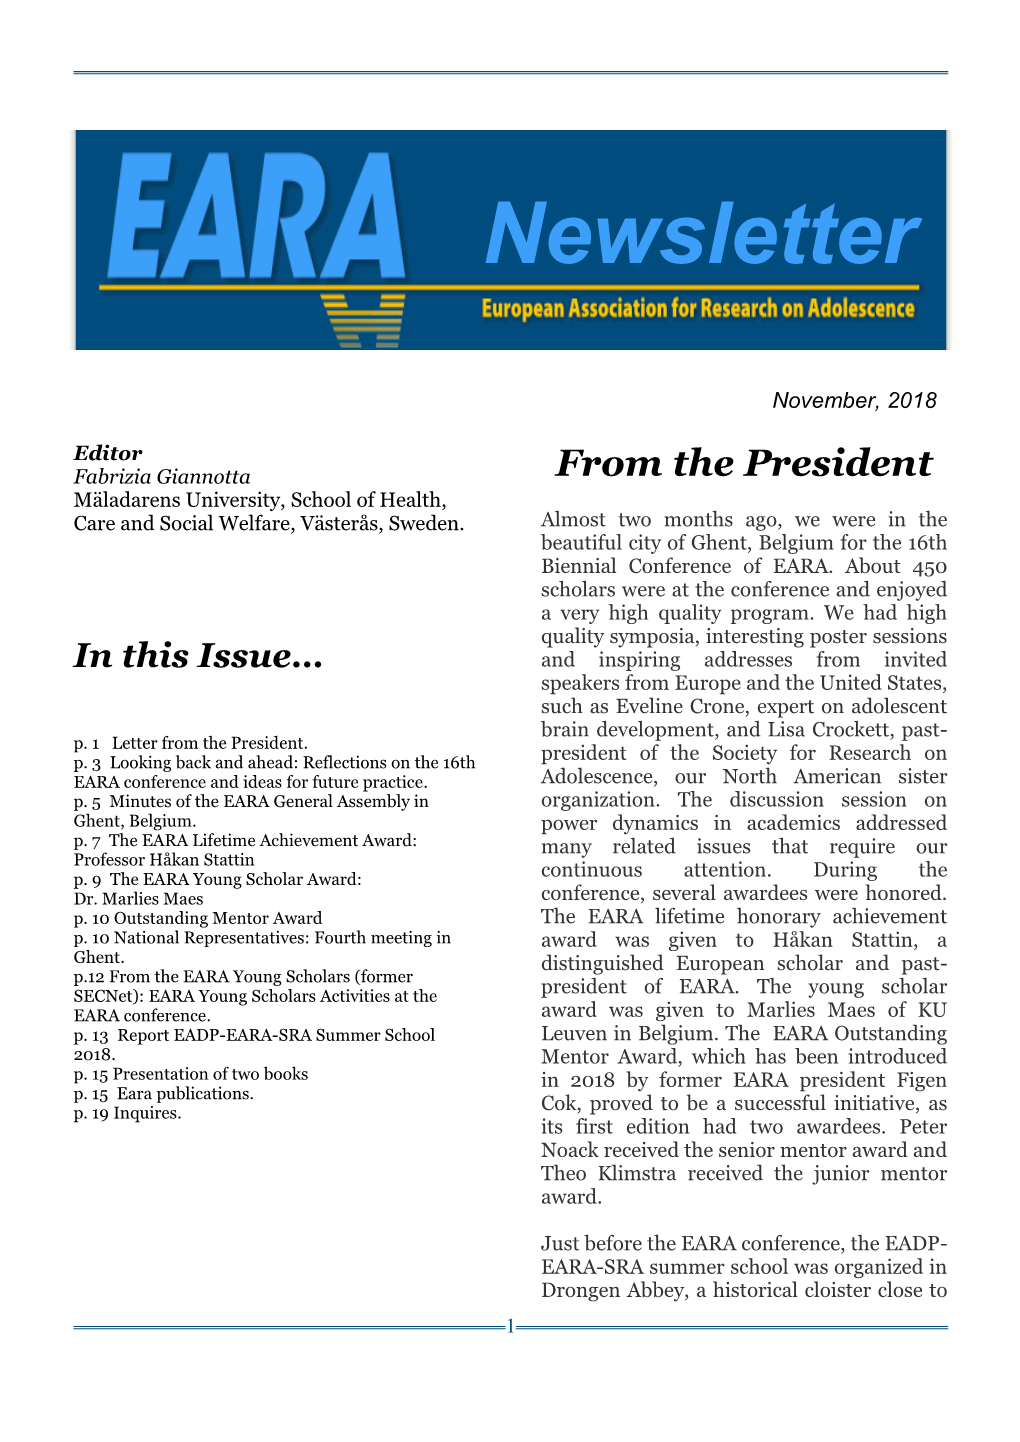 EARA Newsletter November 2018